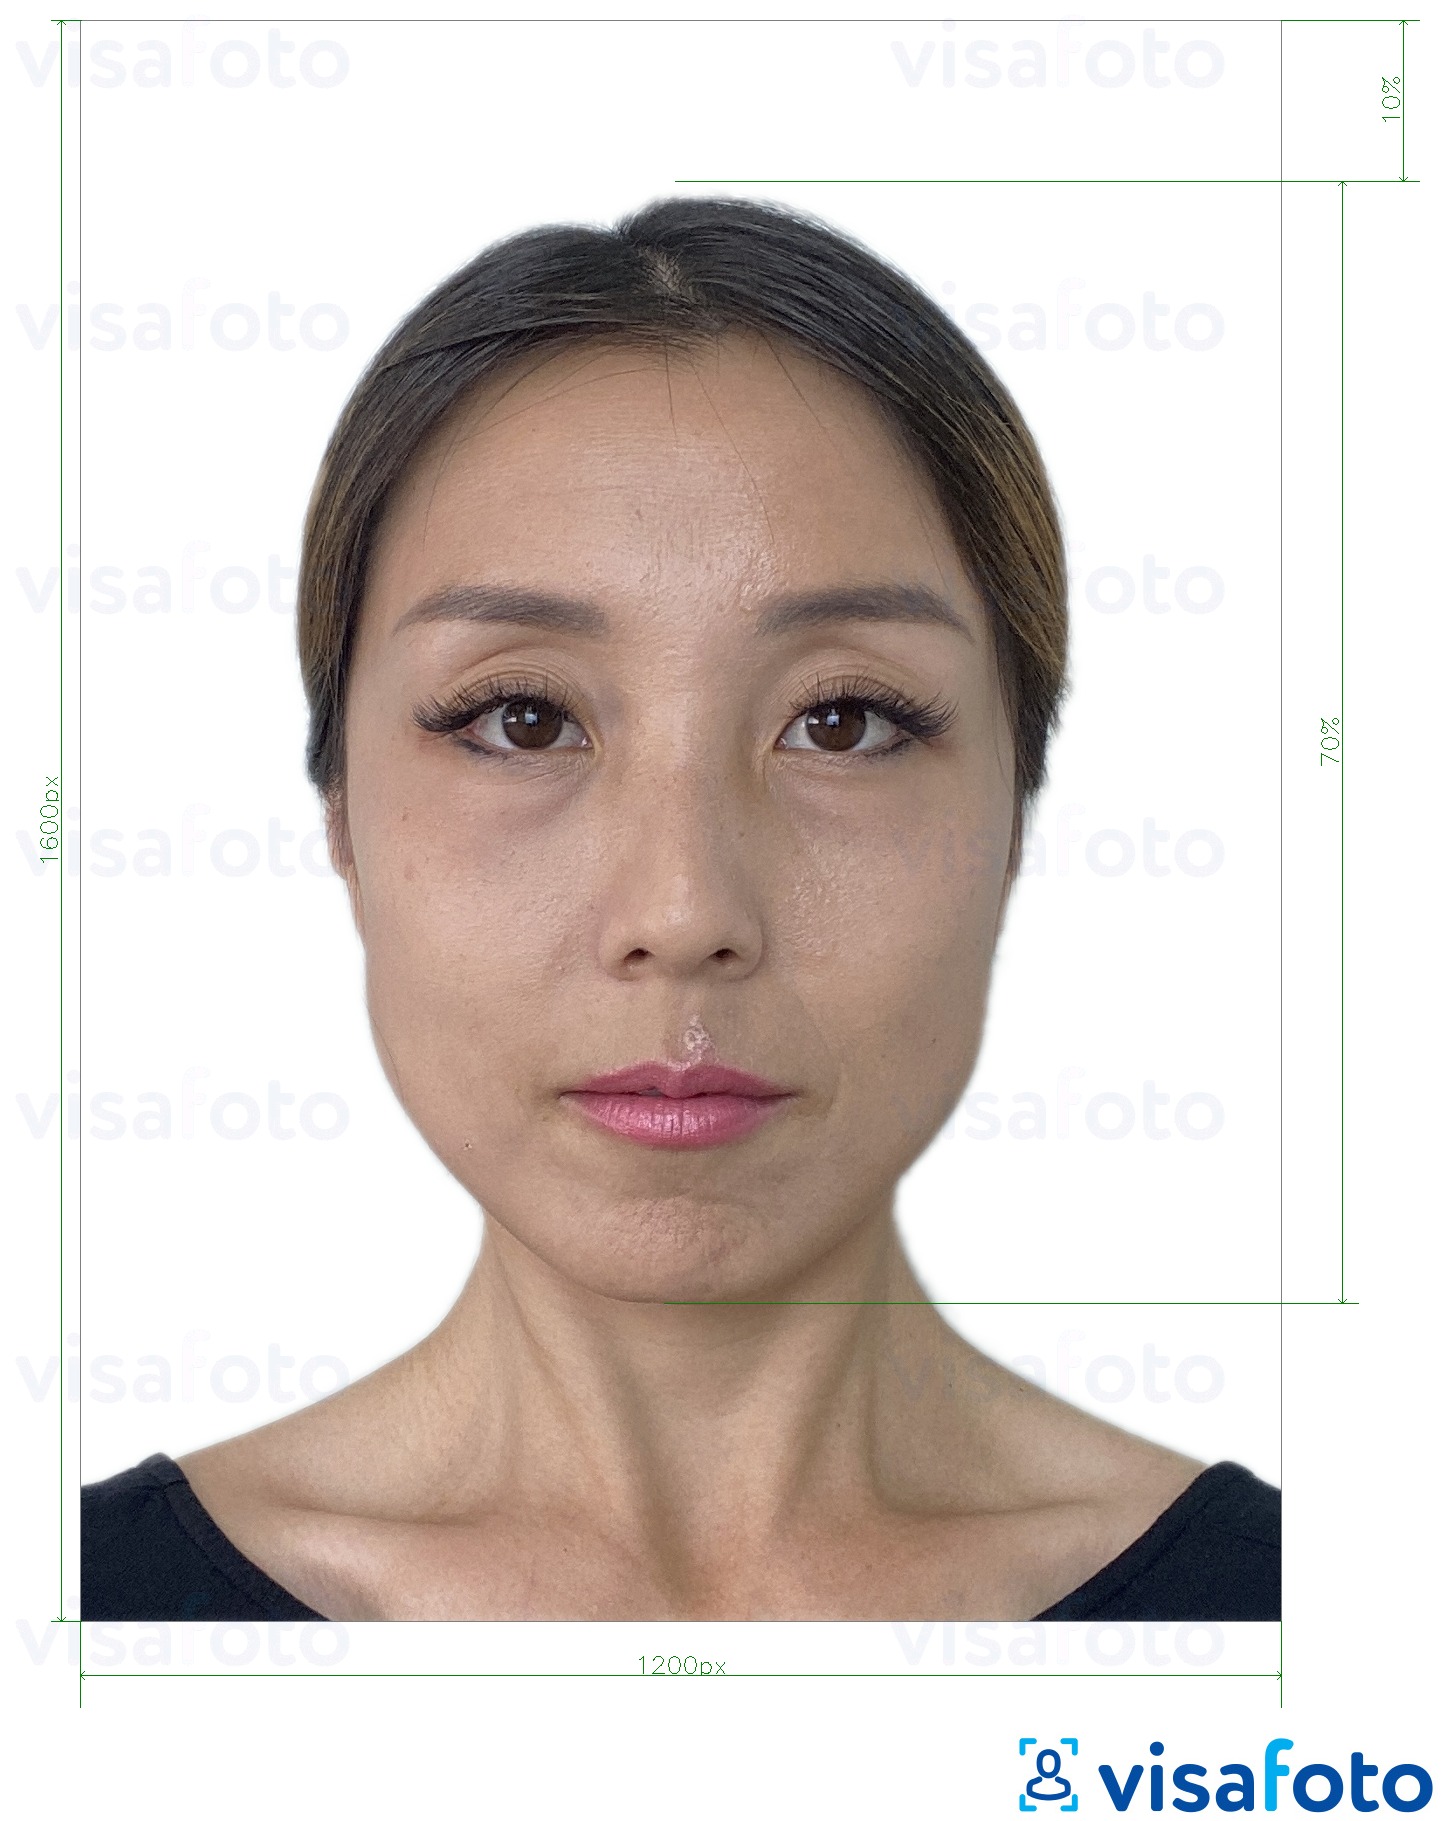 Eksempel bilde for Hong Kong elektronisk e-visum 1200x1600 piksler med riktig størrelse